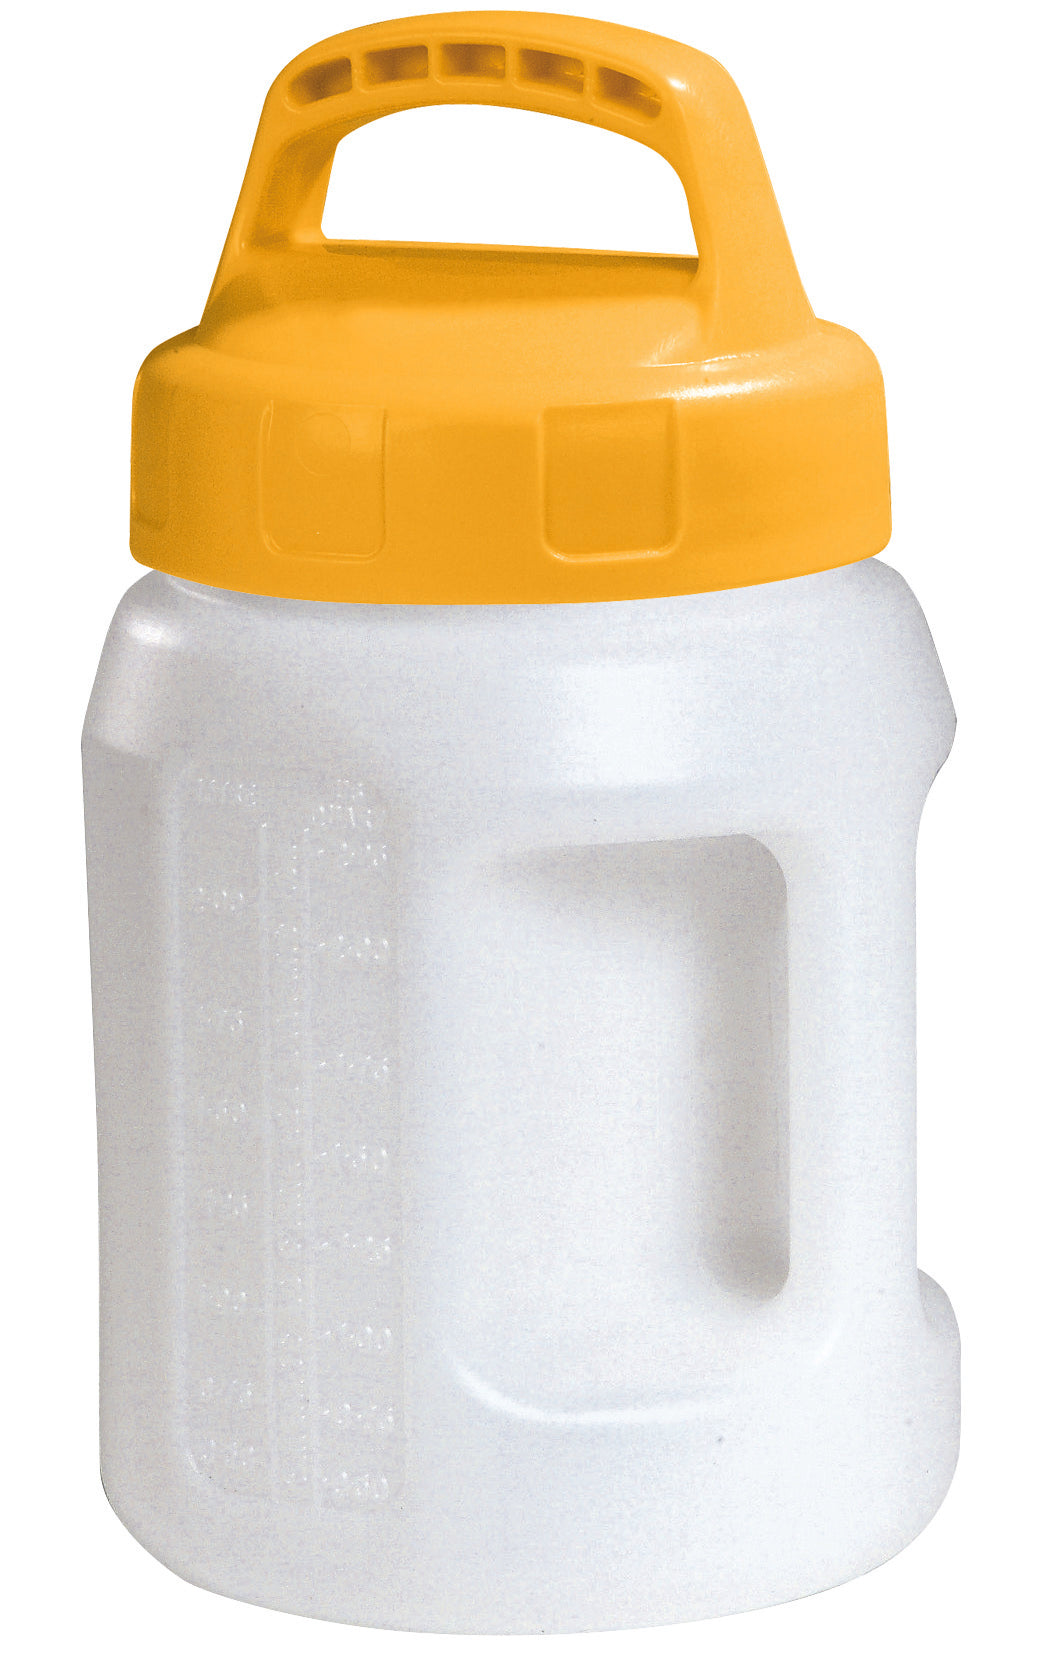 Öl-Kanne aus HDPE 2 Liter mit gelbem Lagerdeckel, Polyethylen (high density)